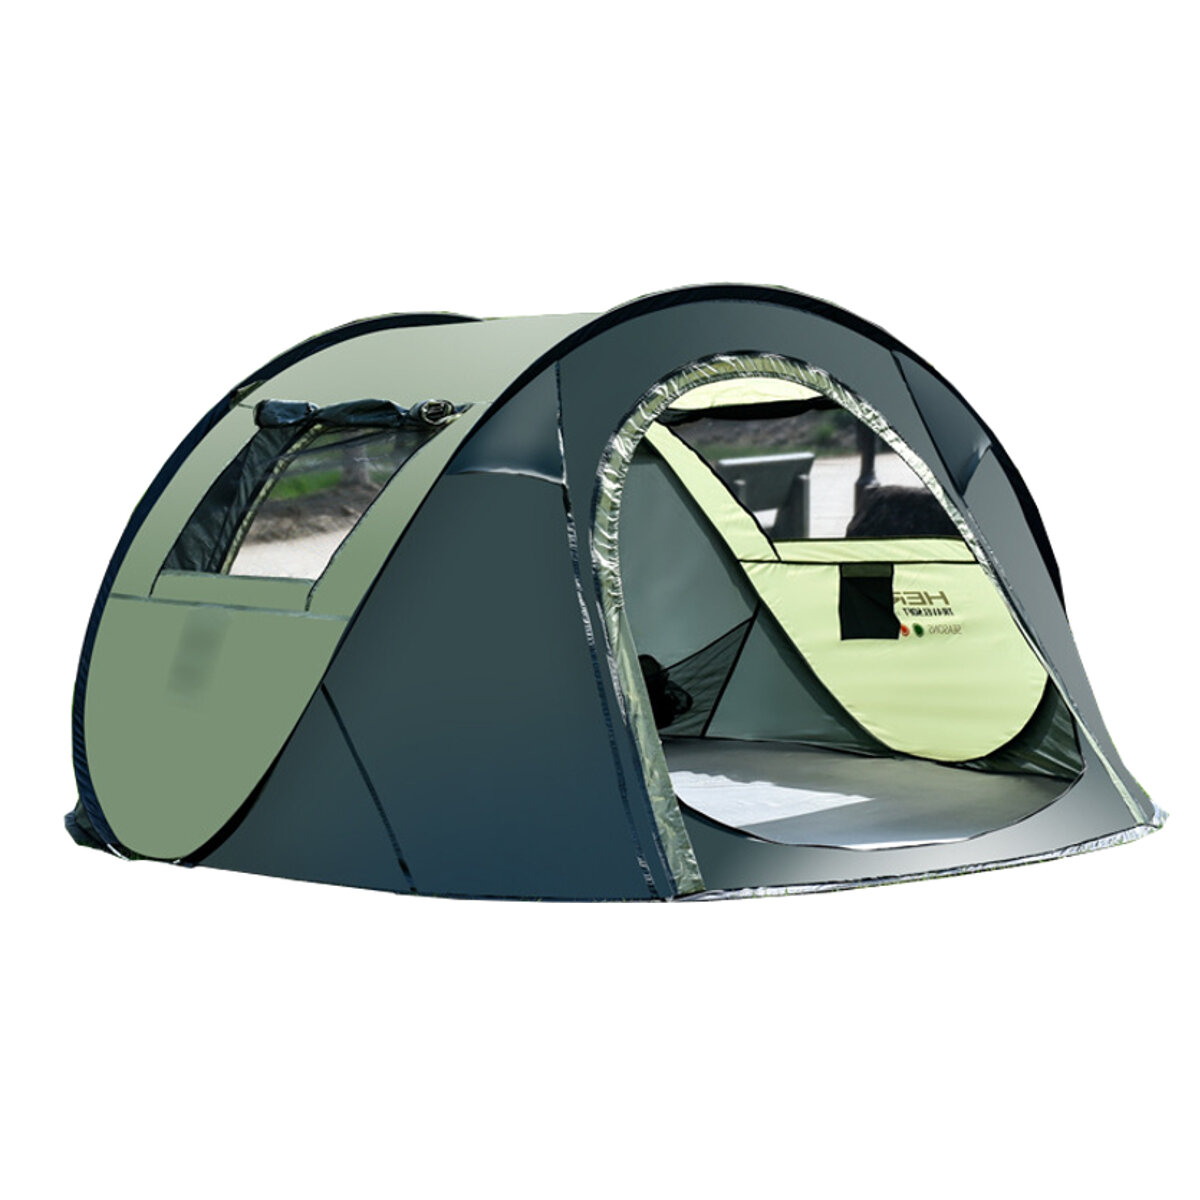 Tenda da campeggio impermeabile per 5-8 persone, tenda da campeggio automatica ad alta velocità per viaggi e escursioni all'aperto - caffè/verde